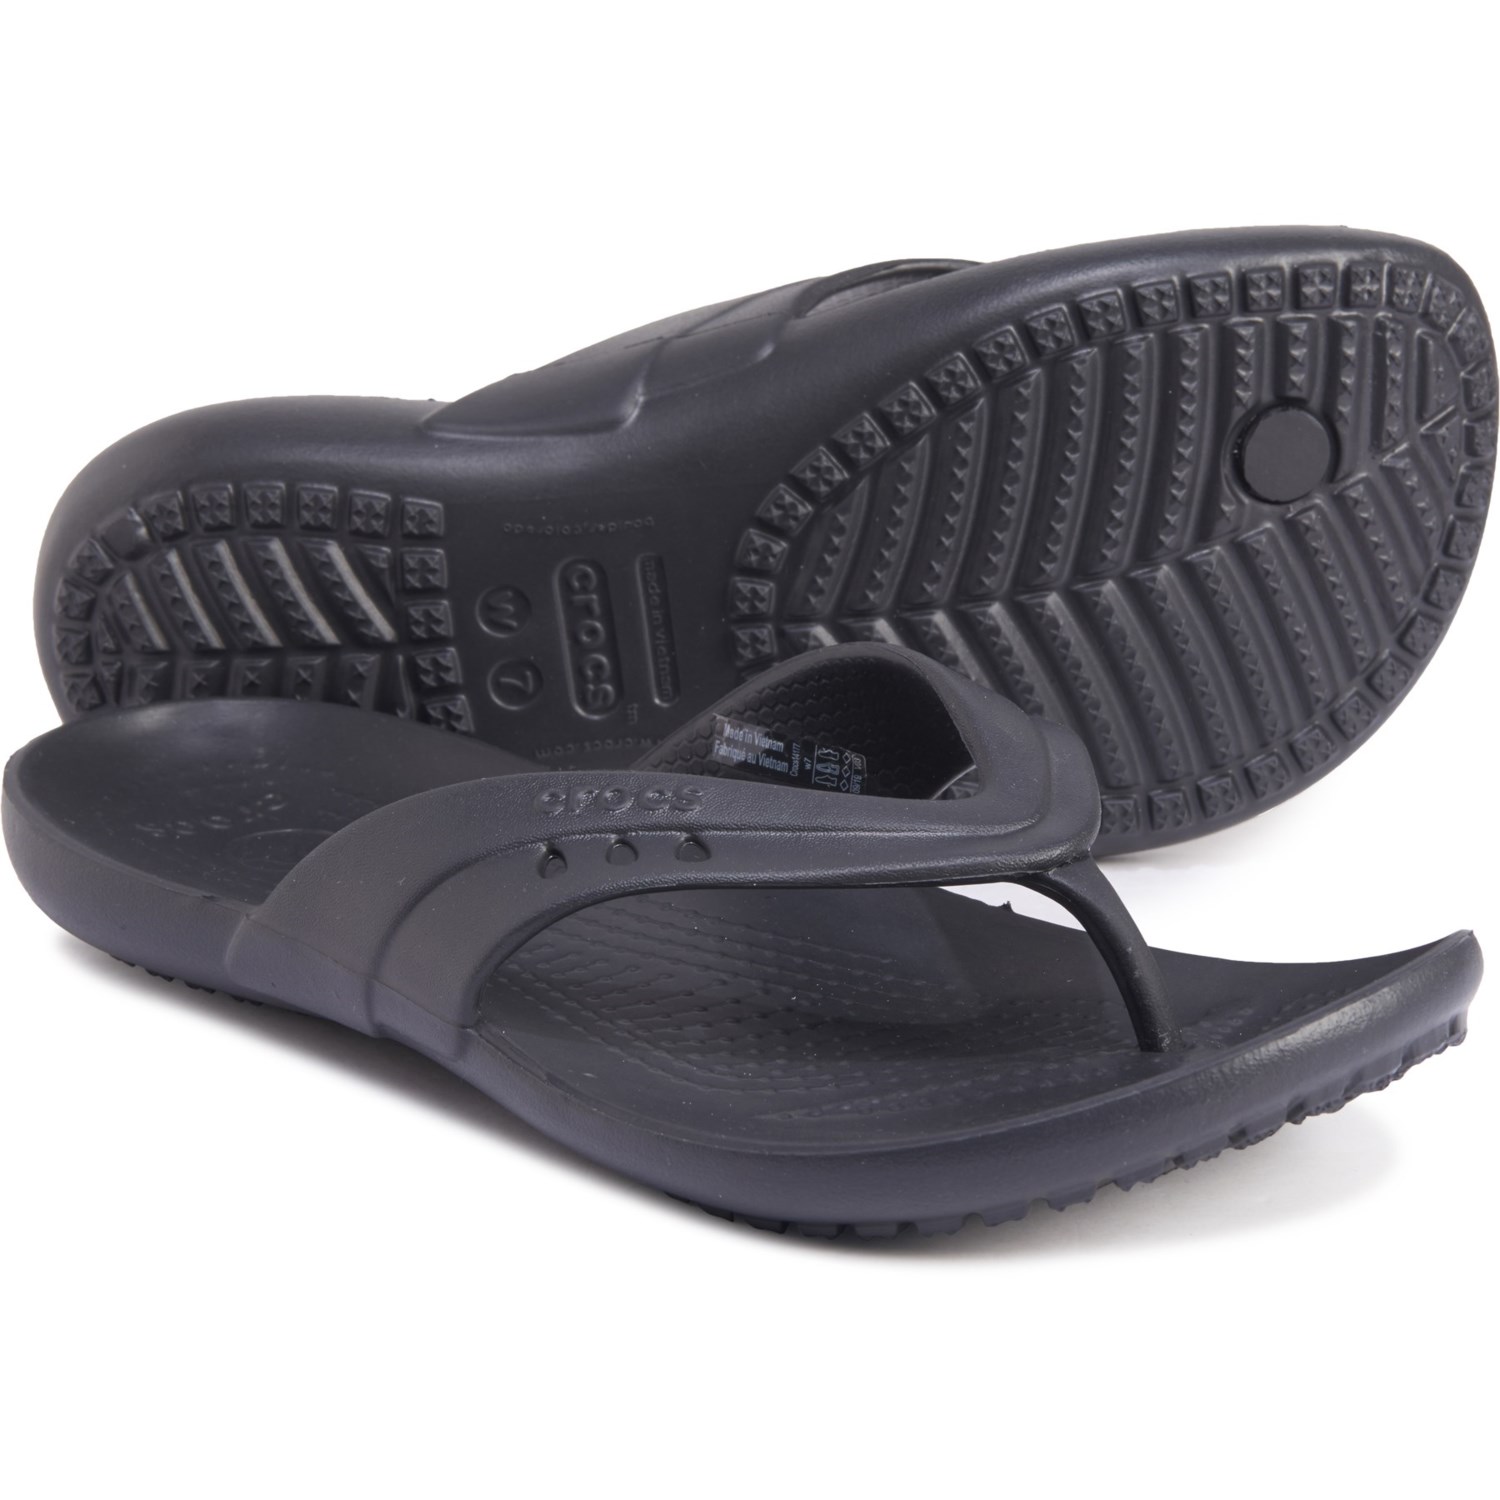 crocs black women's flip flops